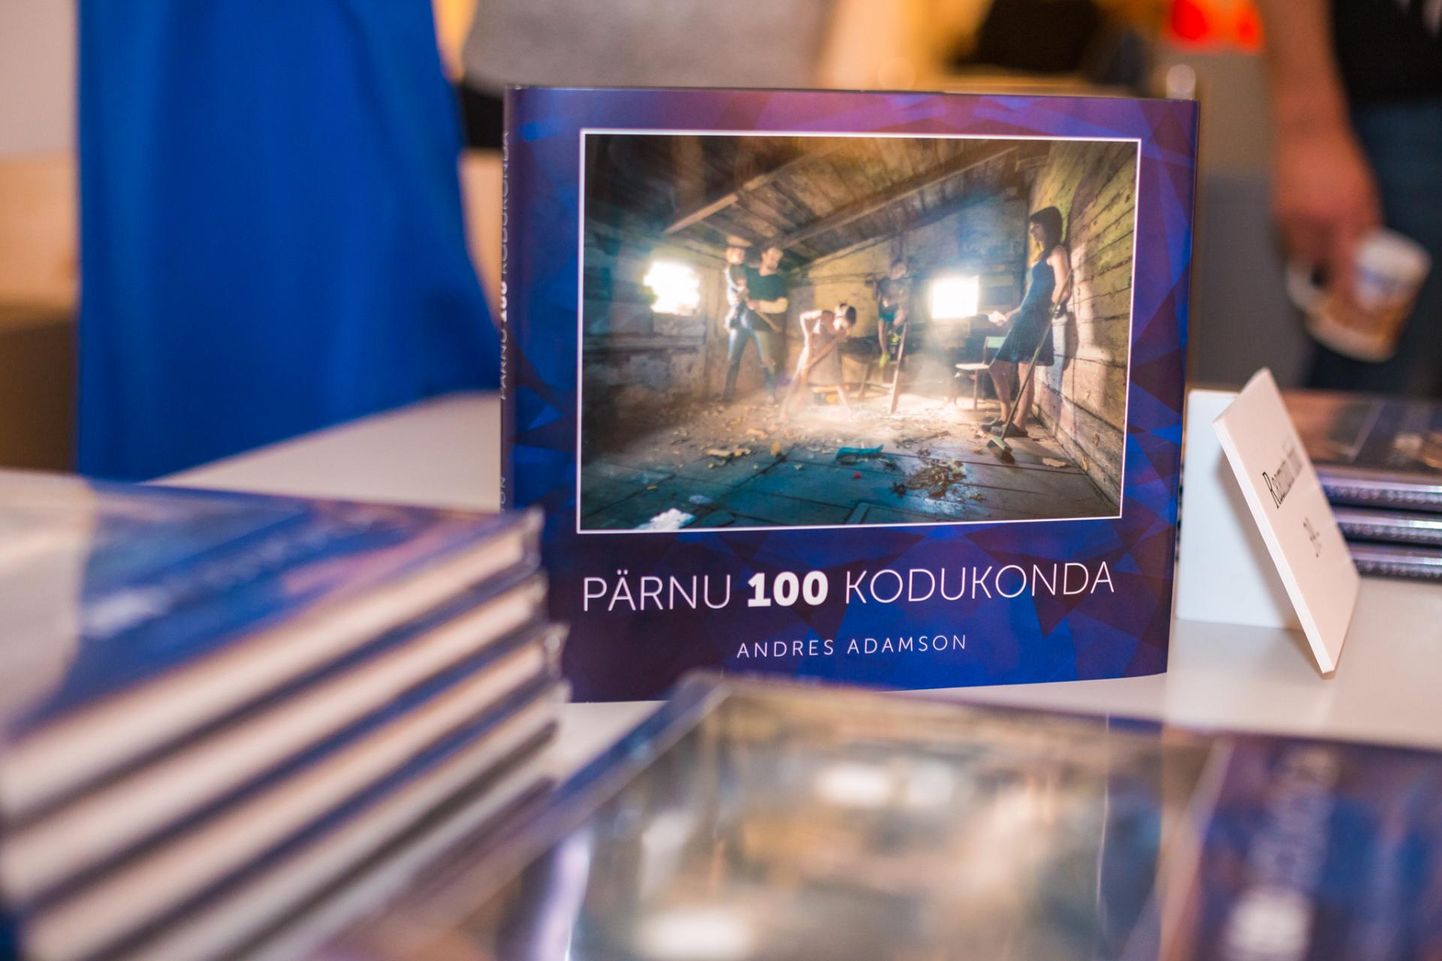 Mullu pälvis fotoalbumi ja -näituse „Pärnu 100 kodukonda“ eest loomingupreemia Andres Adamson.